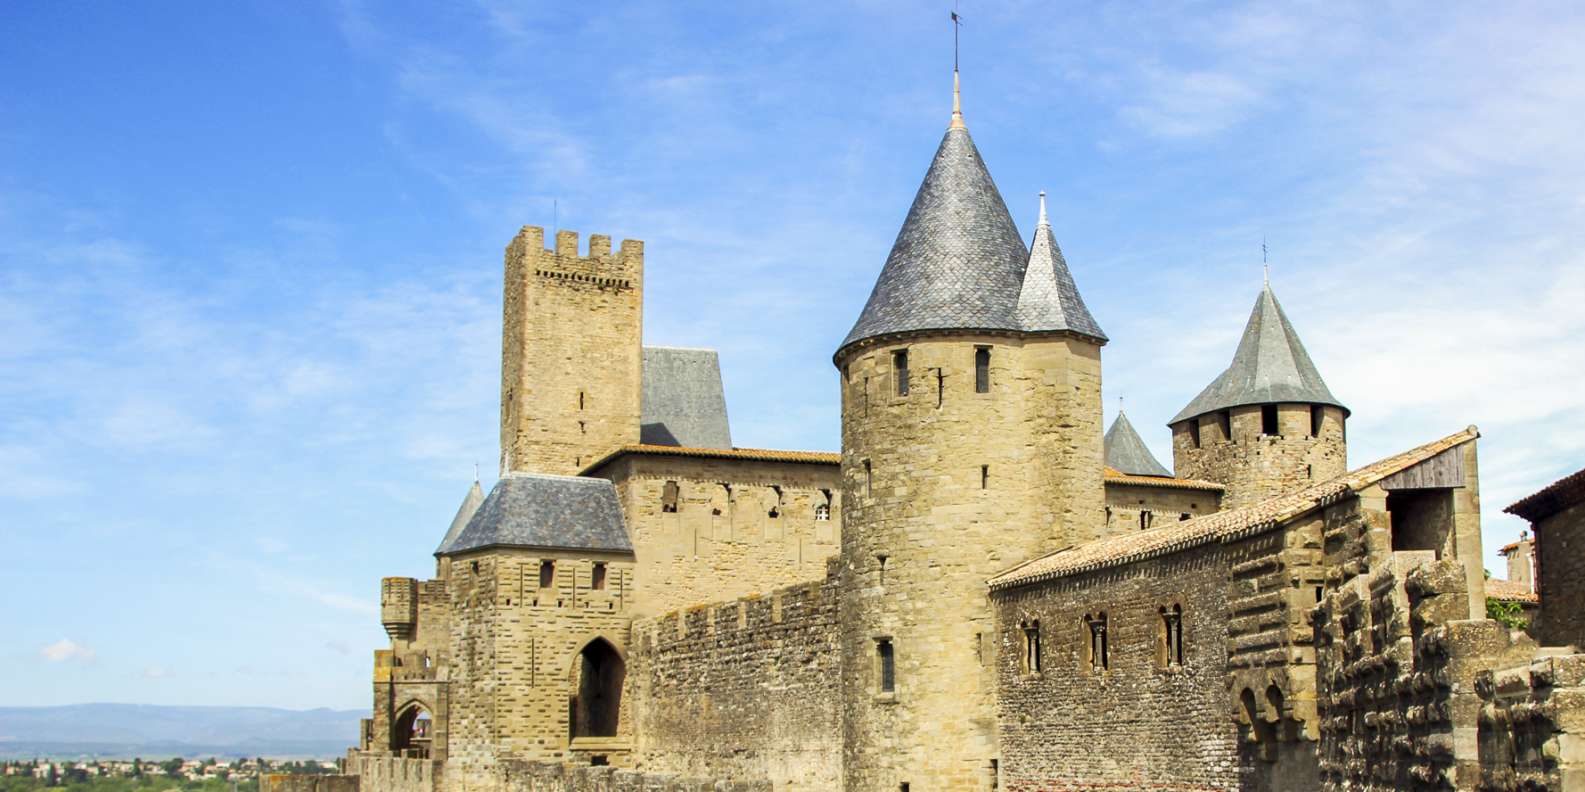 Cité de Carcassonne, Carcassonne - Réservez des tickets pour votre visite